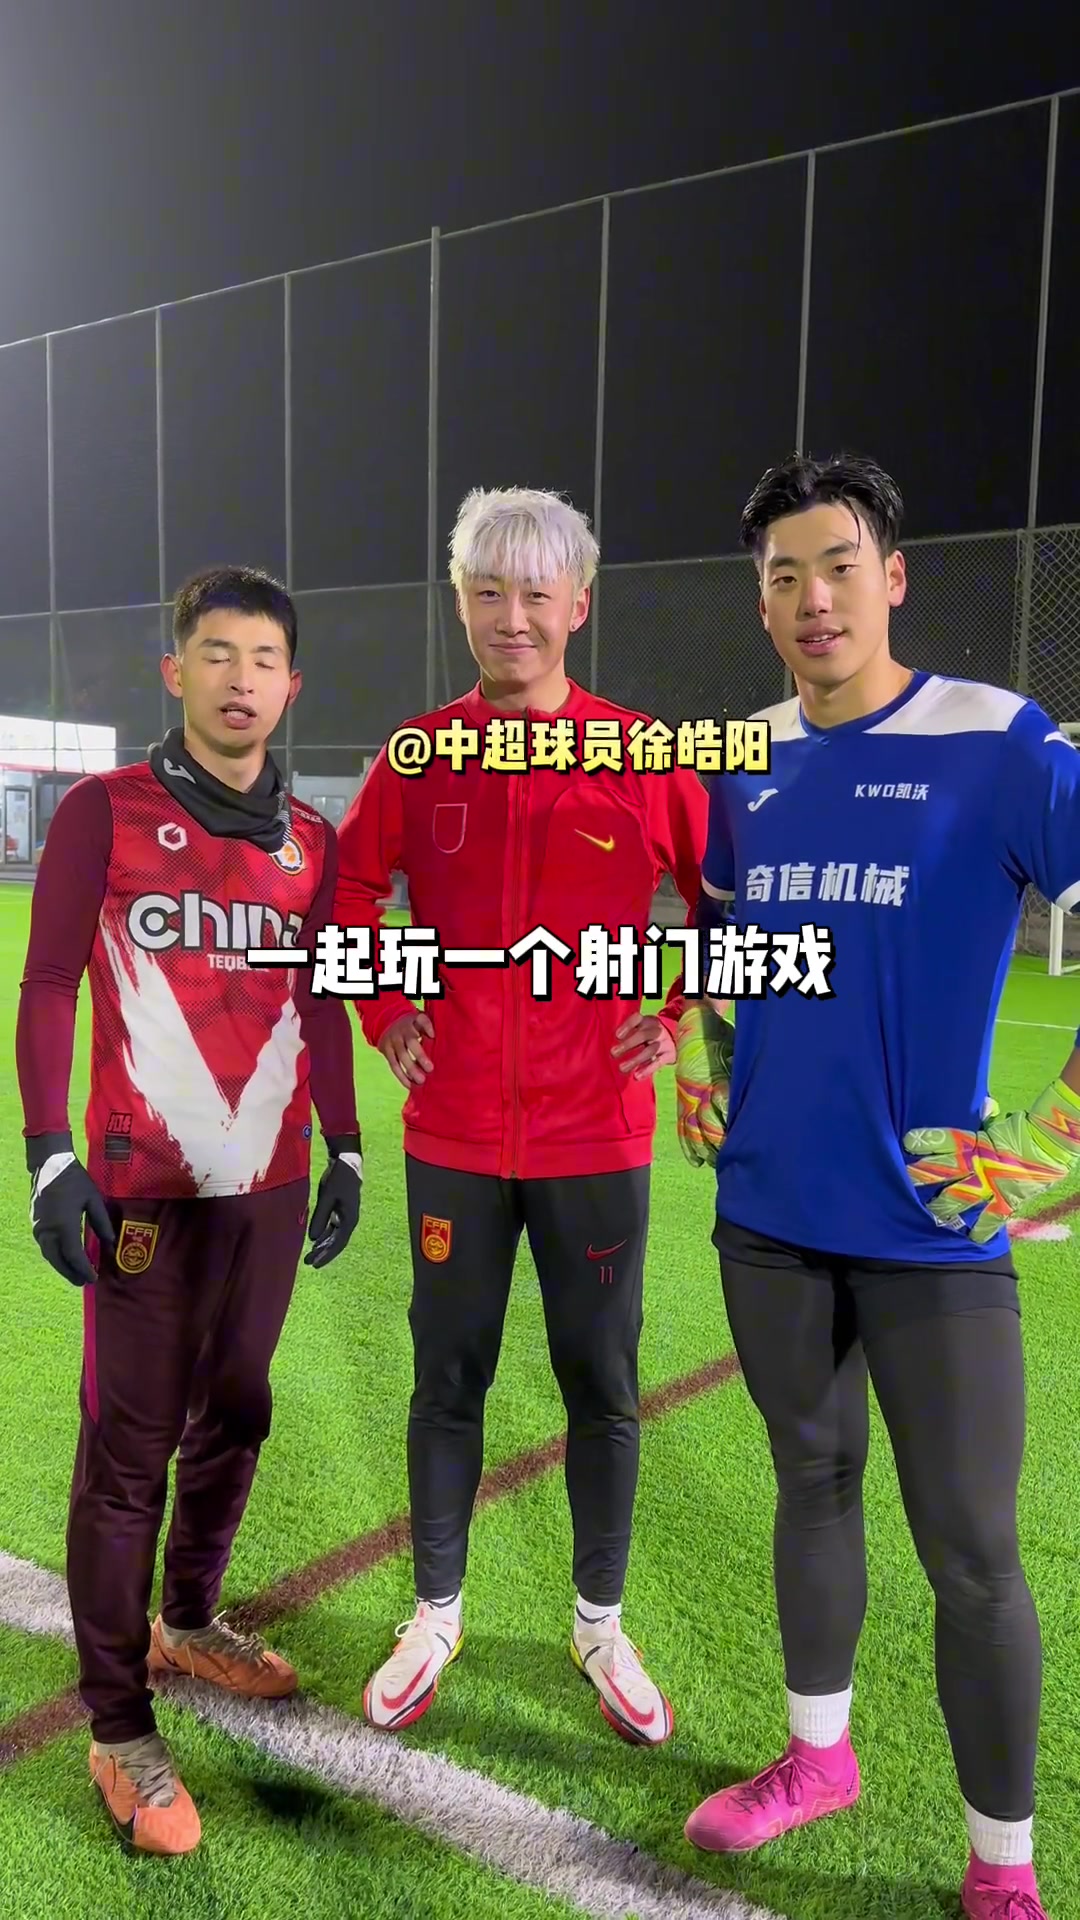  徐皓阳参加了一个射门游戏，看看职业球员和业余的差距